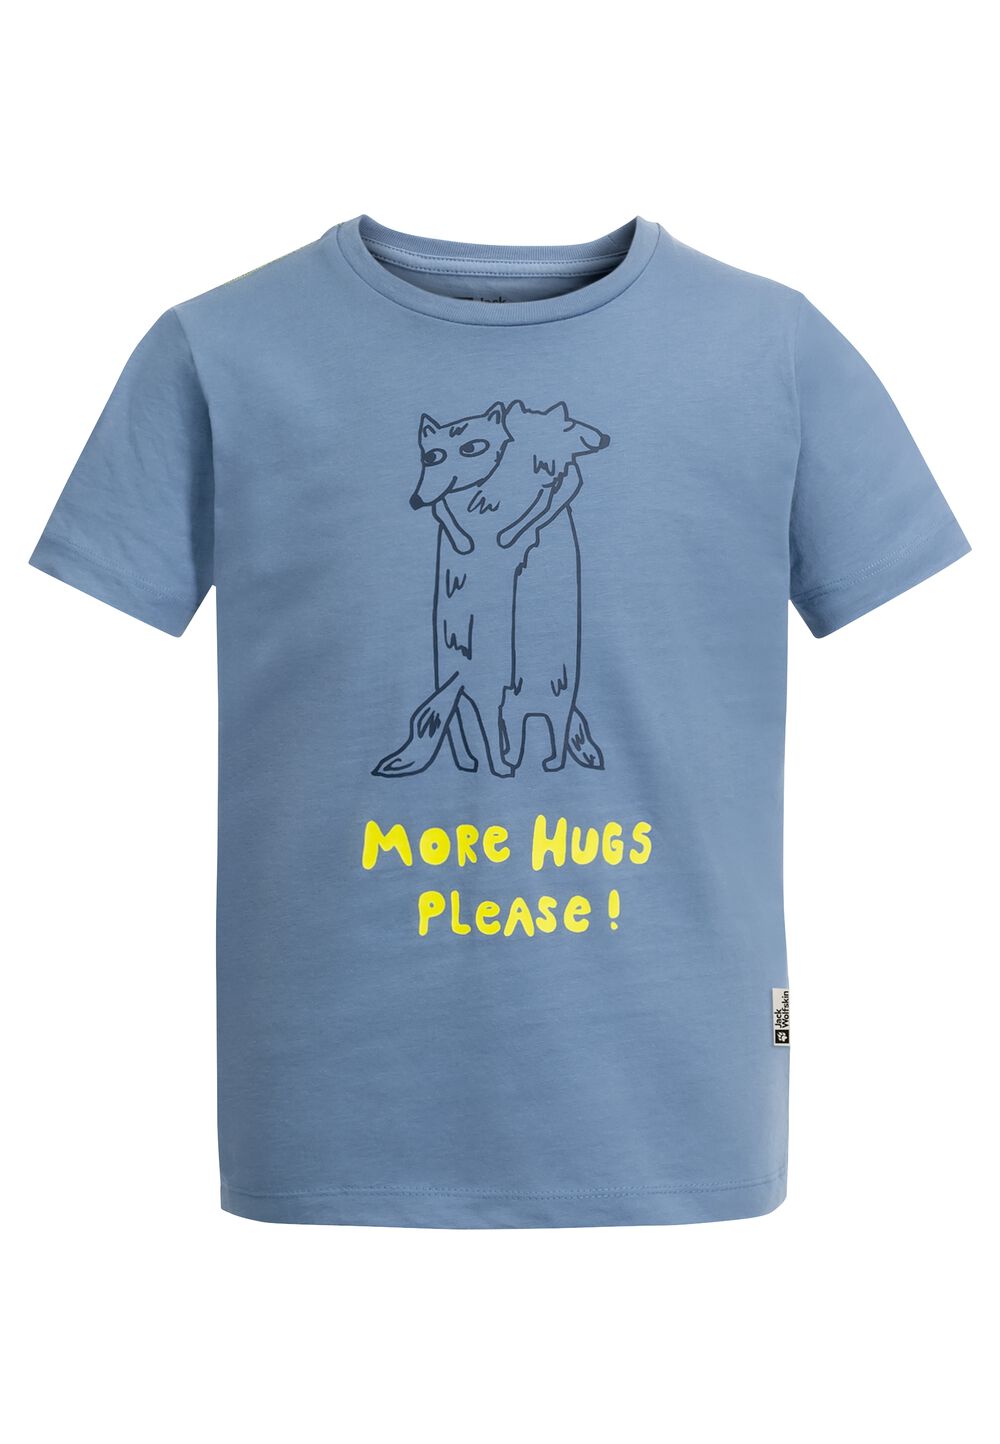 Jack Wolfskin More Hugs T-Shirt Kids T-shirt van biologisch katoen kinderen 116 ele tal blue ele tal blue